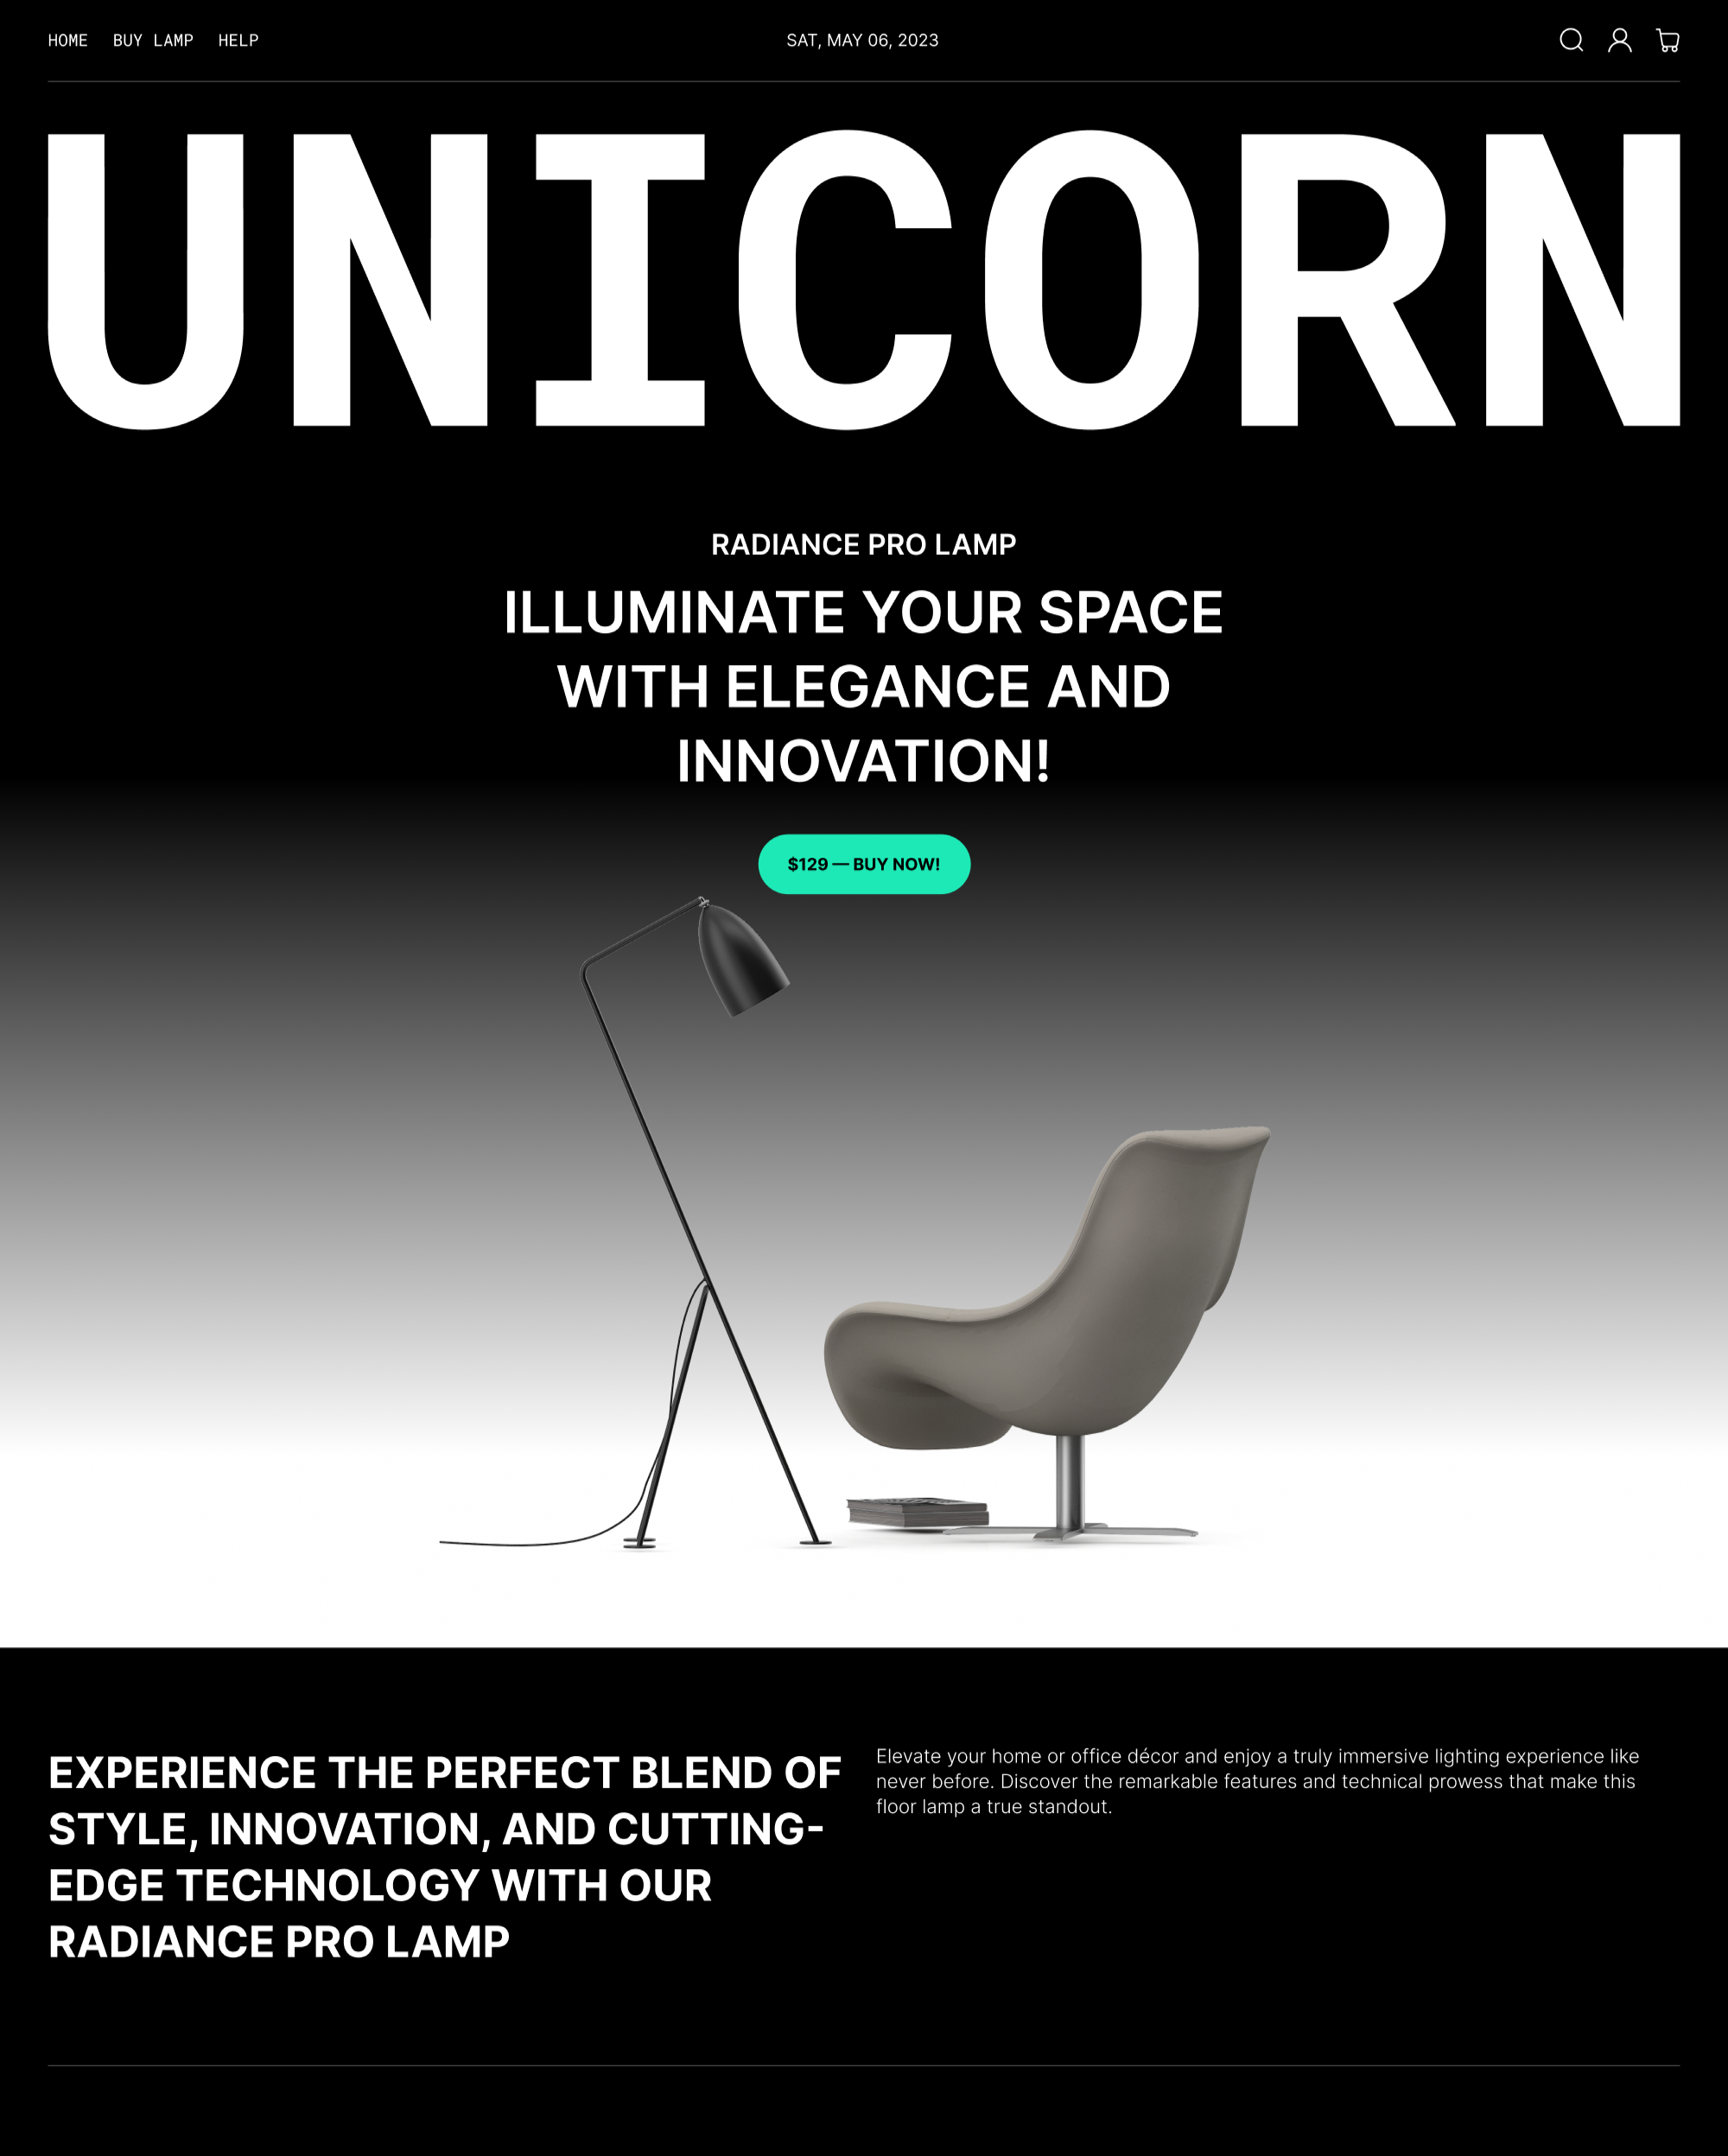 Aperçu de la version pour ordinateur du thème Unicorn dans le style « Dark »